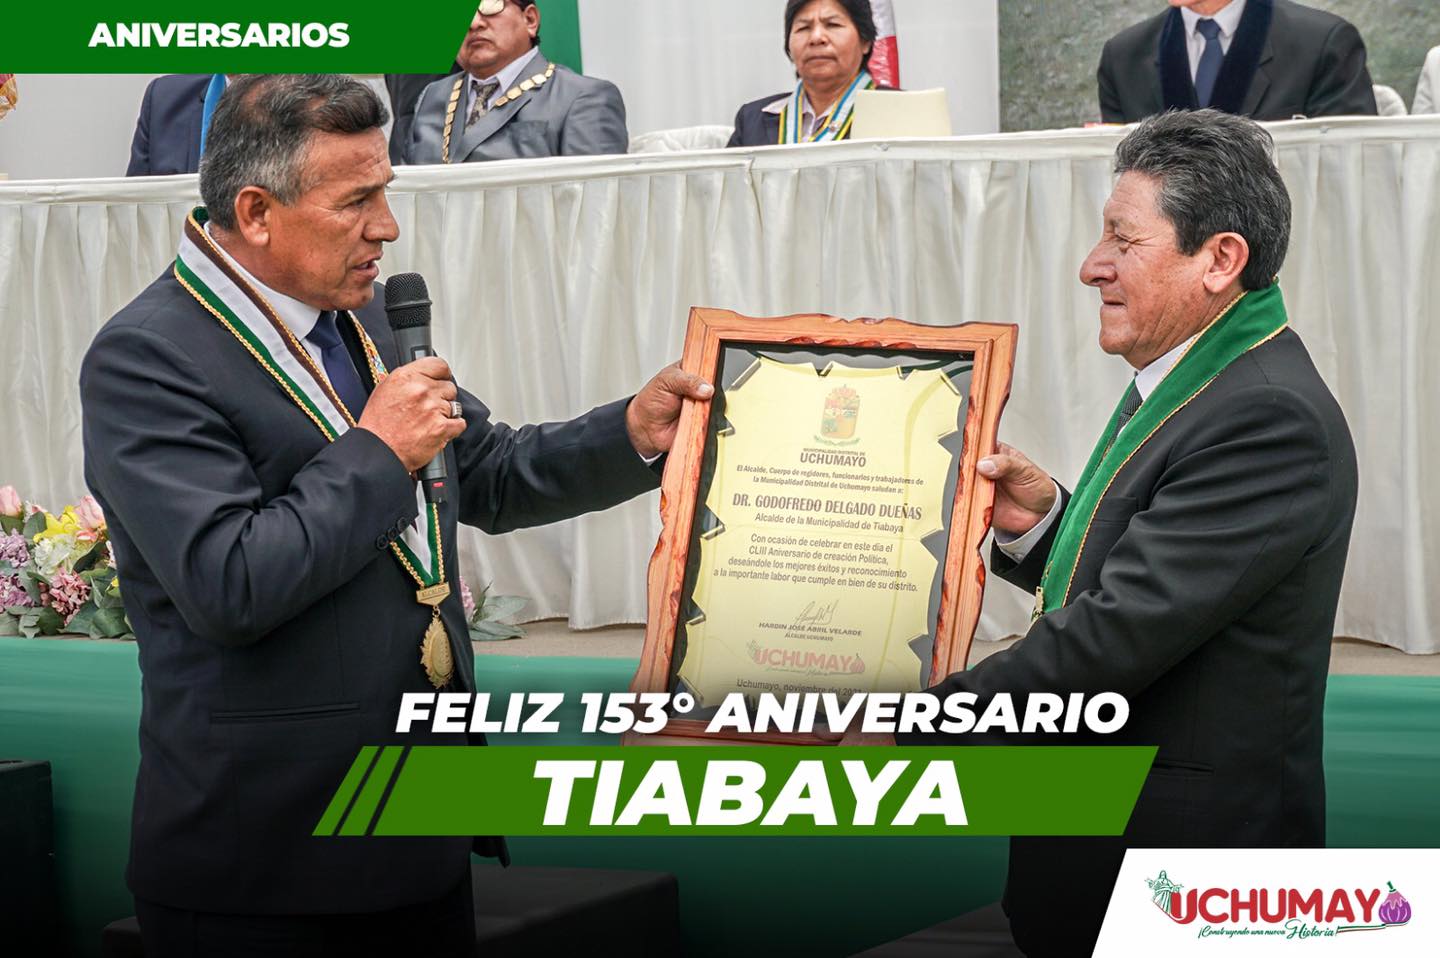 Sesión solemne por el 153 Aniversario del Distrito de Tiabaya